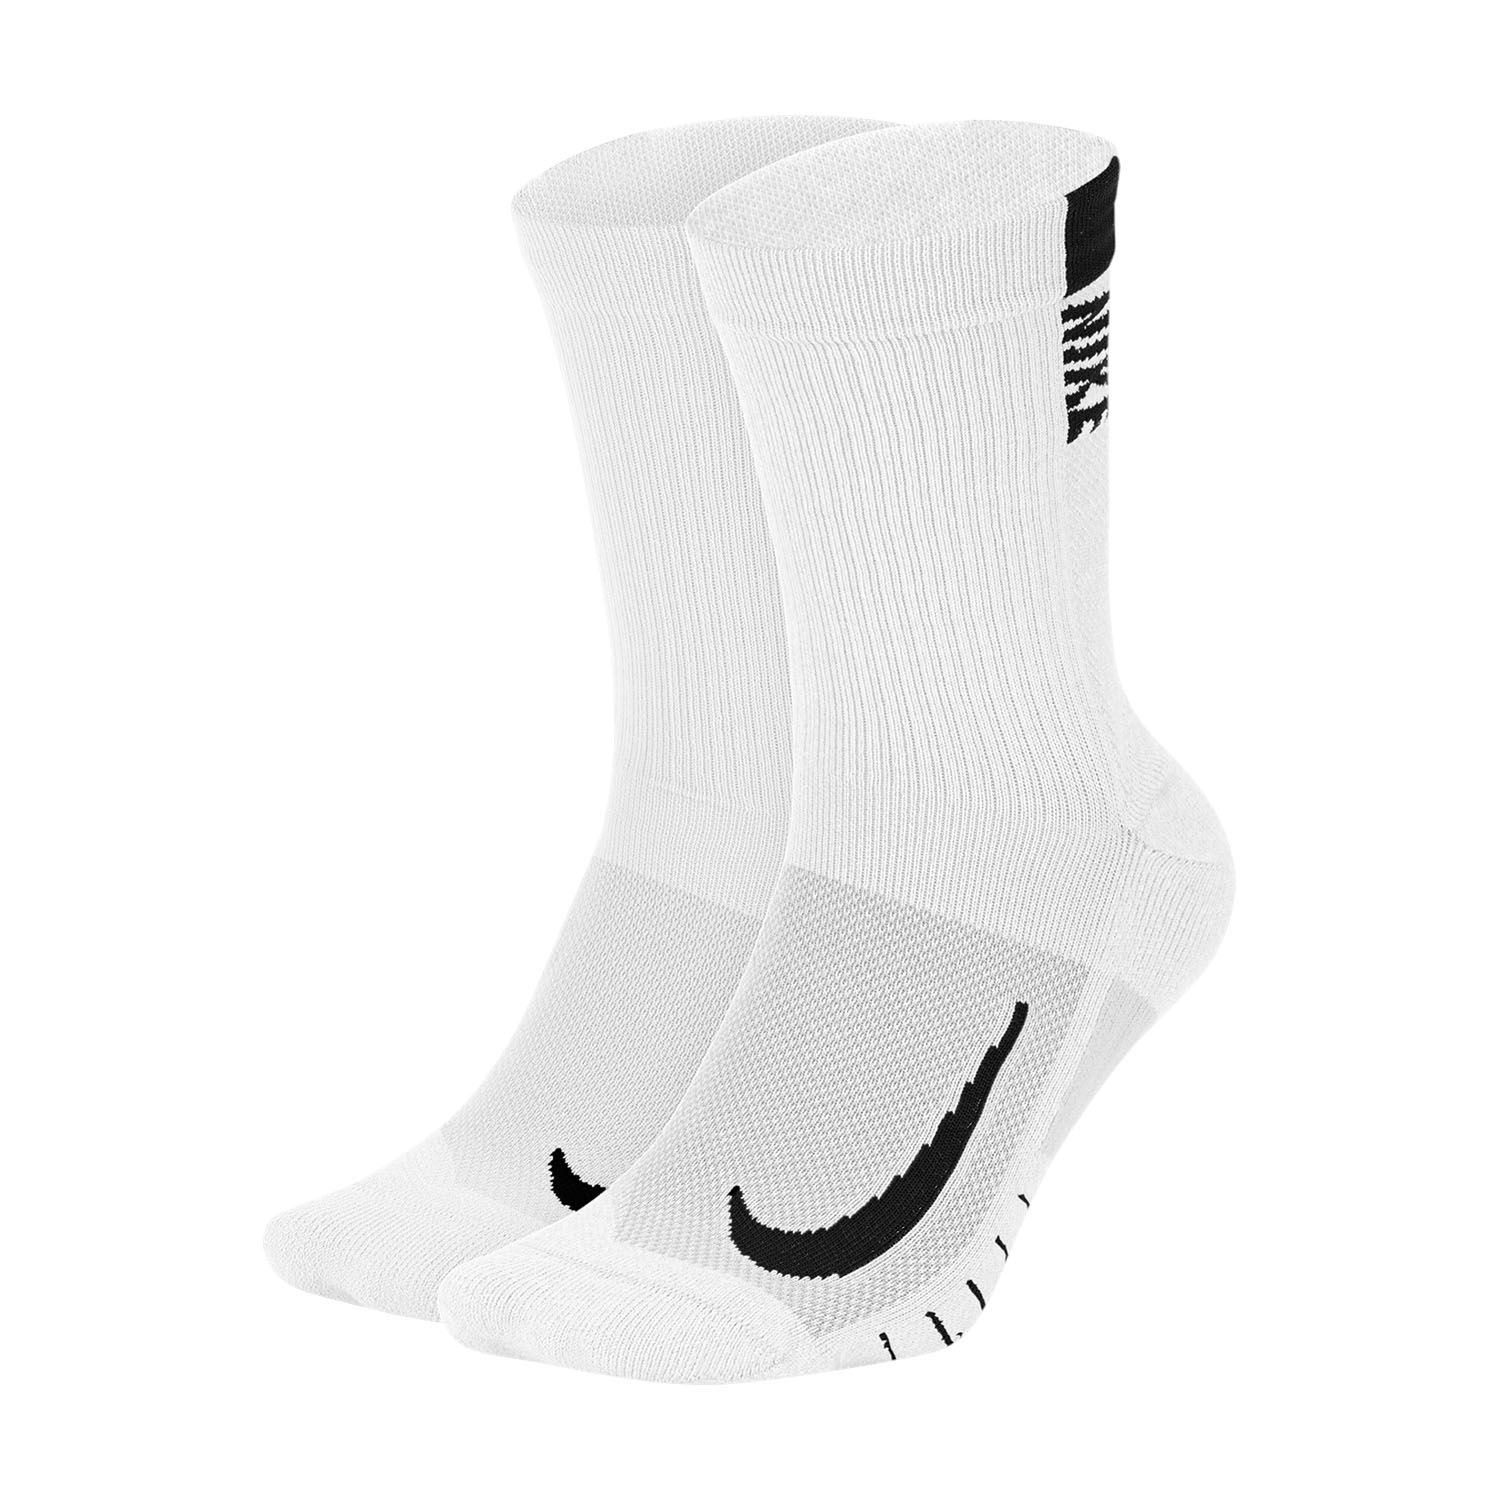 Nike Dri-FIT Multiplier Crew x 2 Running Socks - White/Black